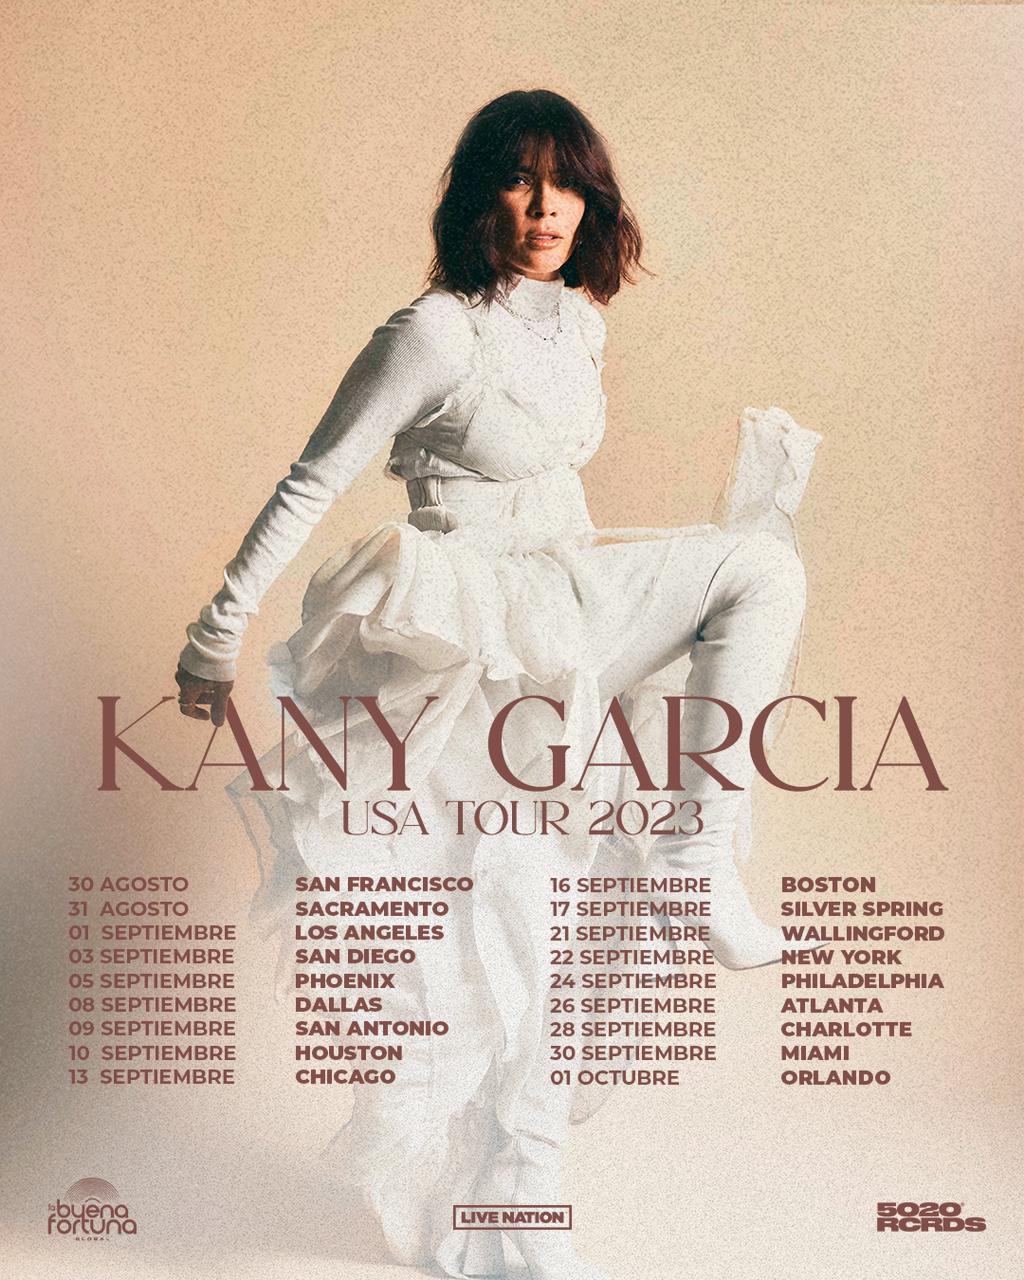 KANY GARCÍA anuncia gira por USA